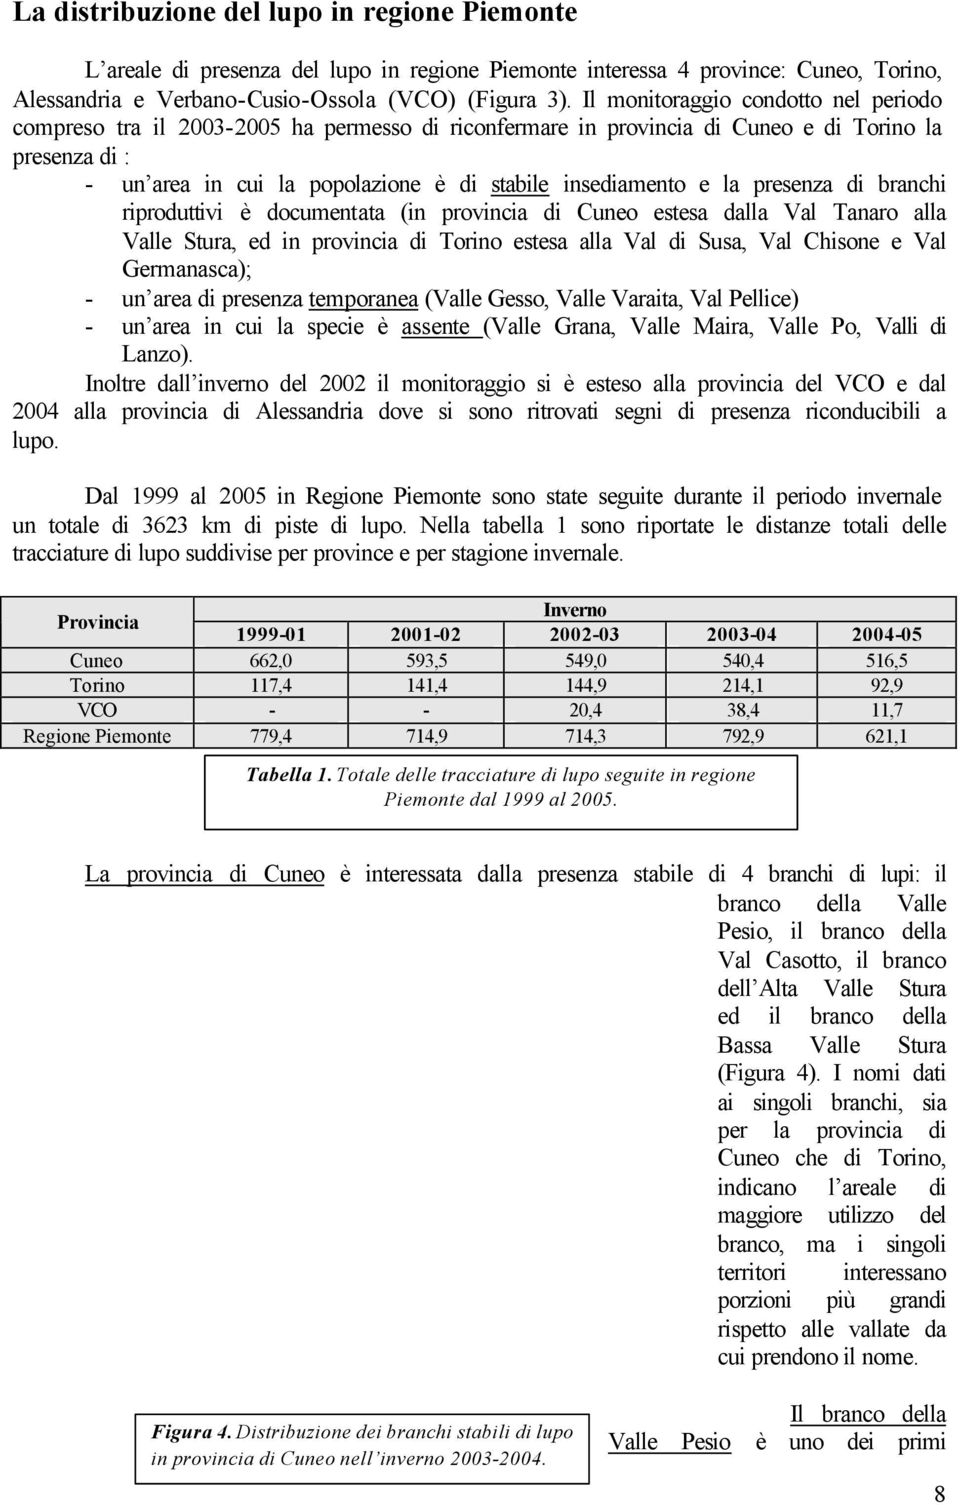 e la presenza di branchi riproduttivi è documentata (in provincia di Cuneo estesa dalla Val Tanaro alla Valle Stura, ed in provincia di Torino estesa alla Val di Susa, Val Chisone e Val Germanasca);